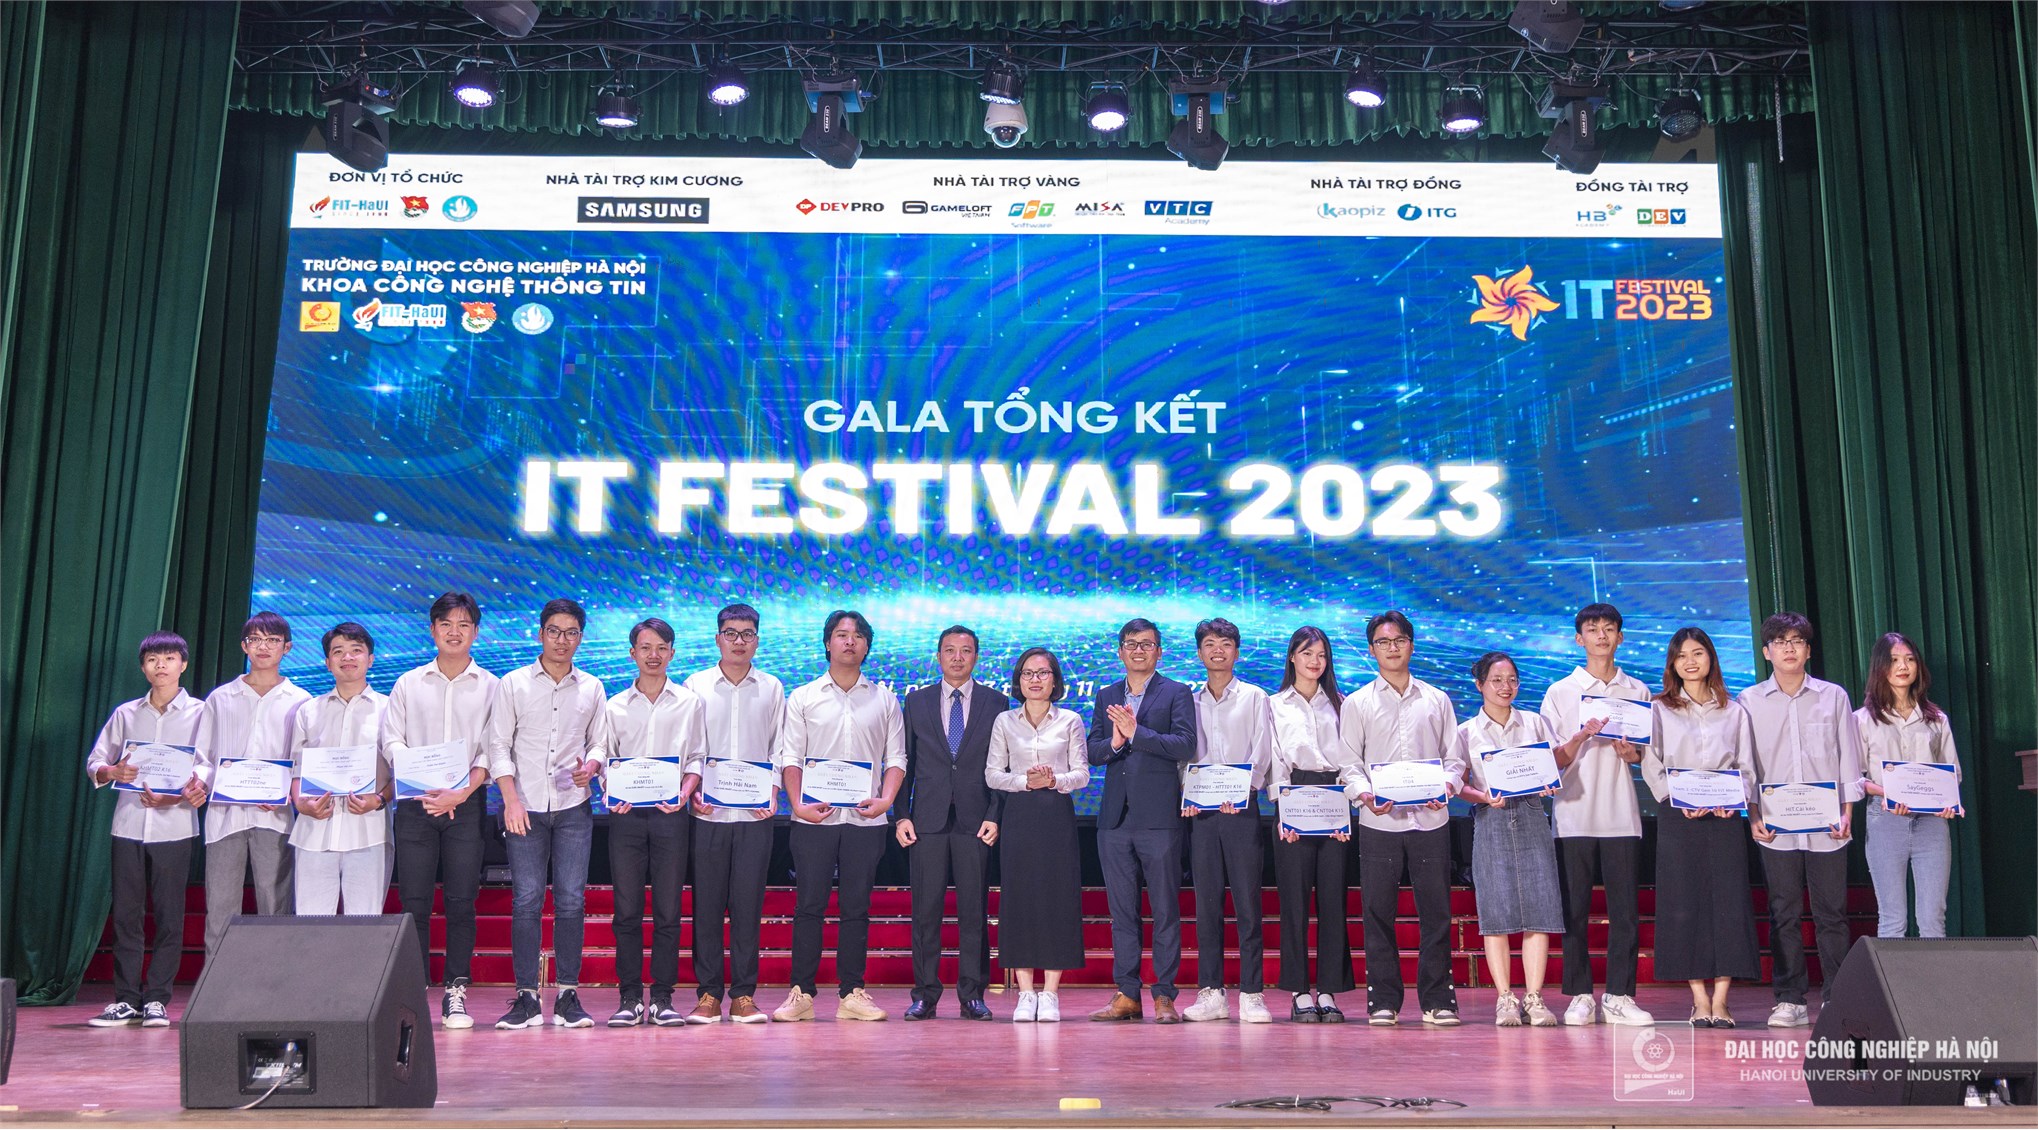 Bùng nổ Gala Ngày hội Công nghệ Thông tin - IT Festival 2023